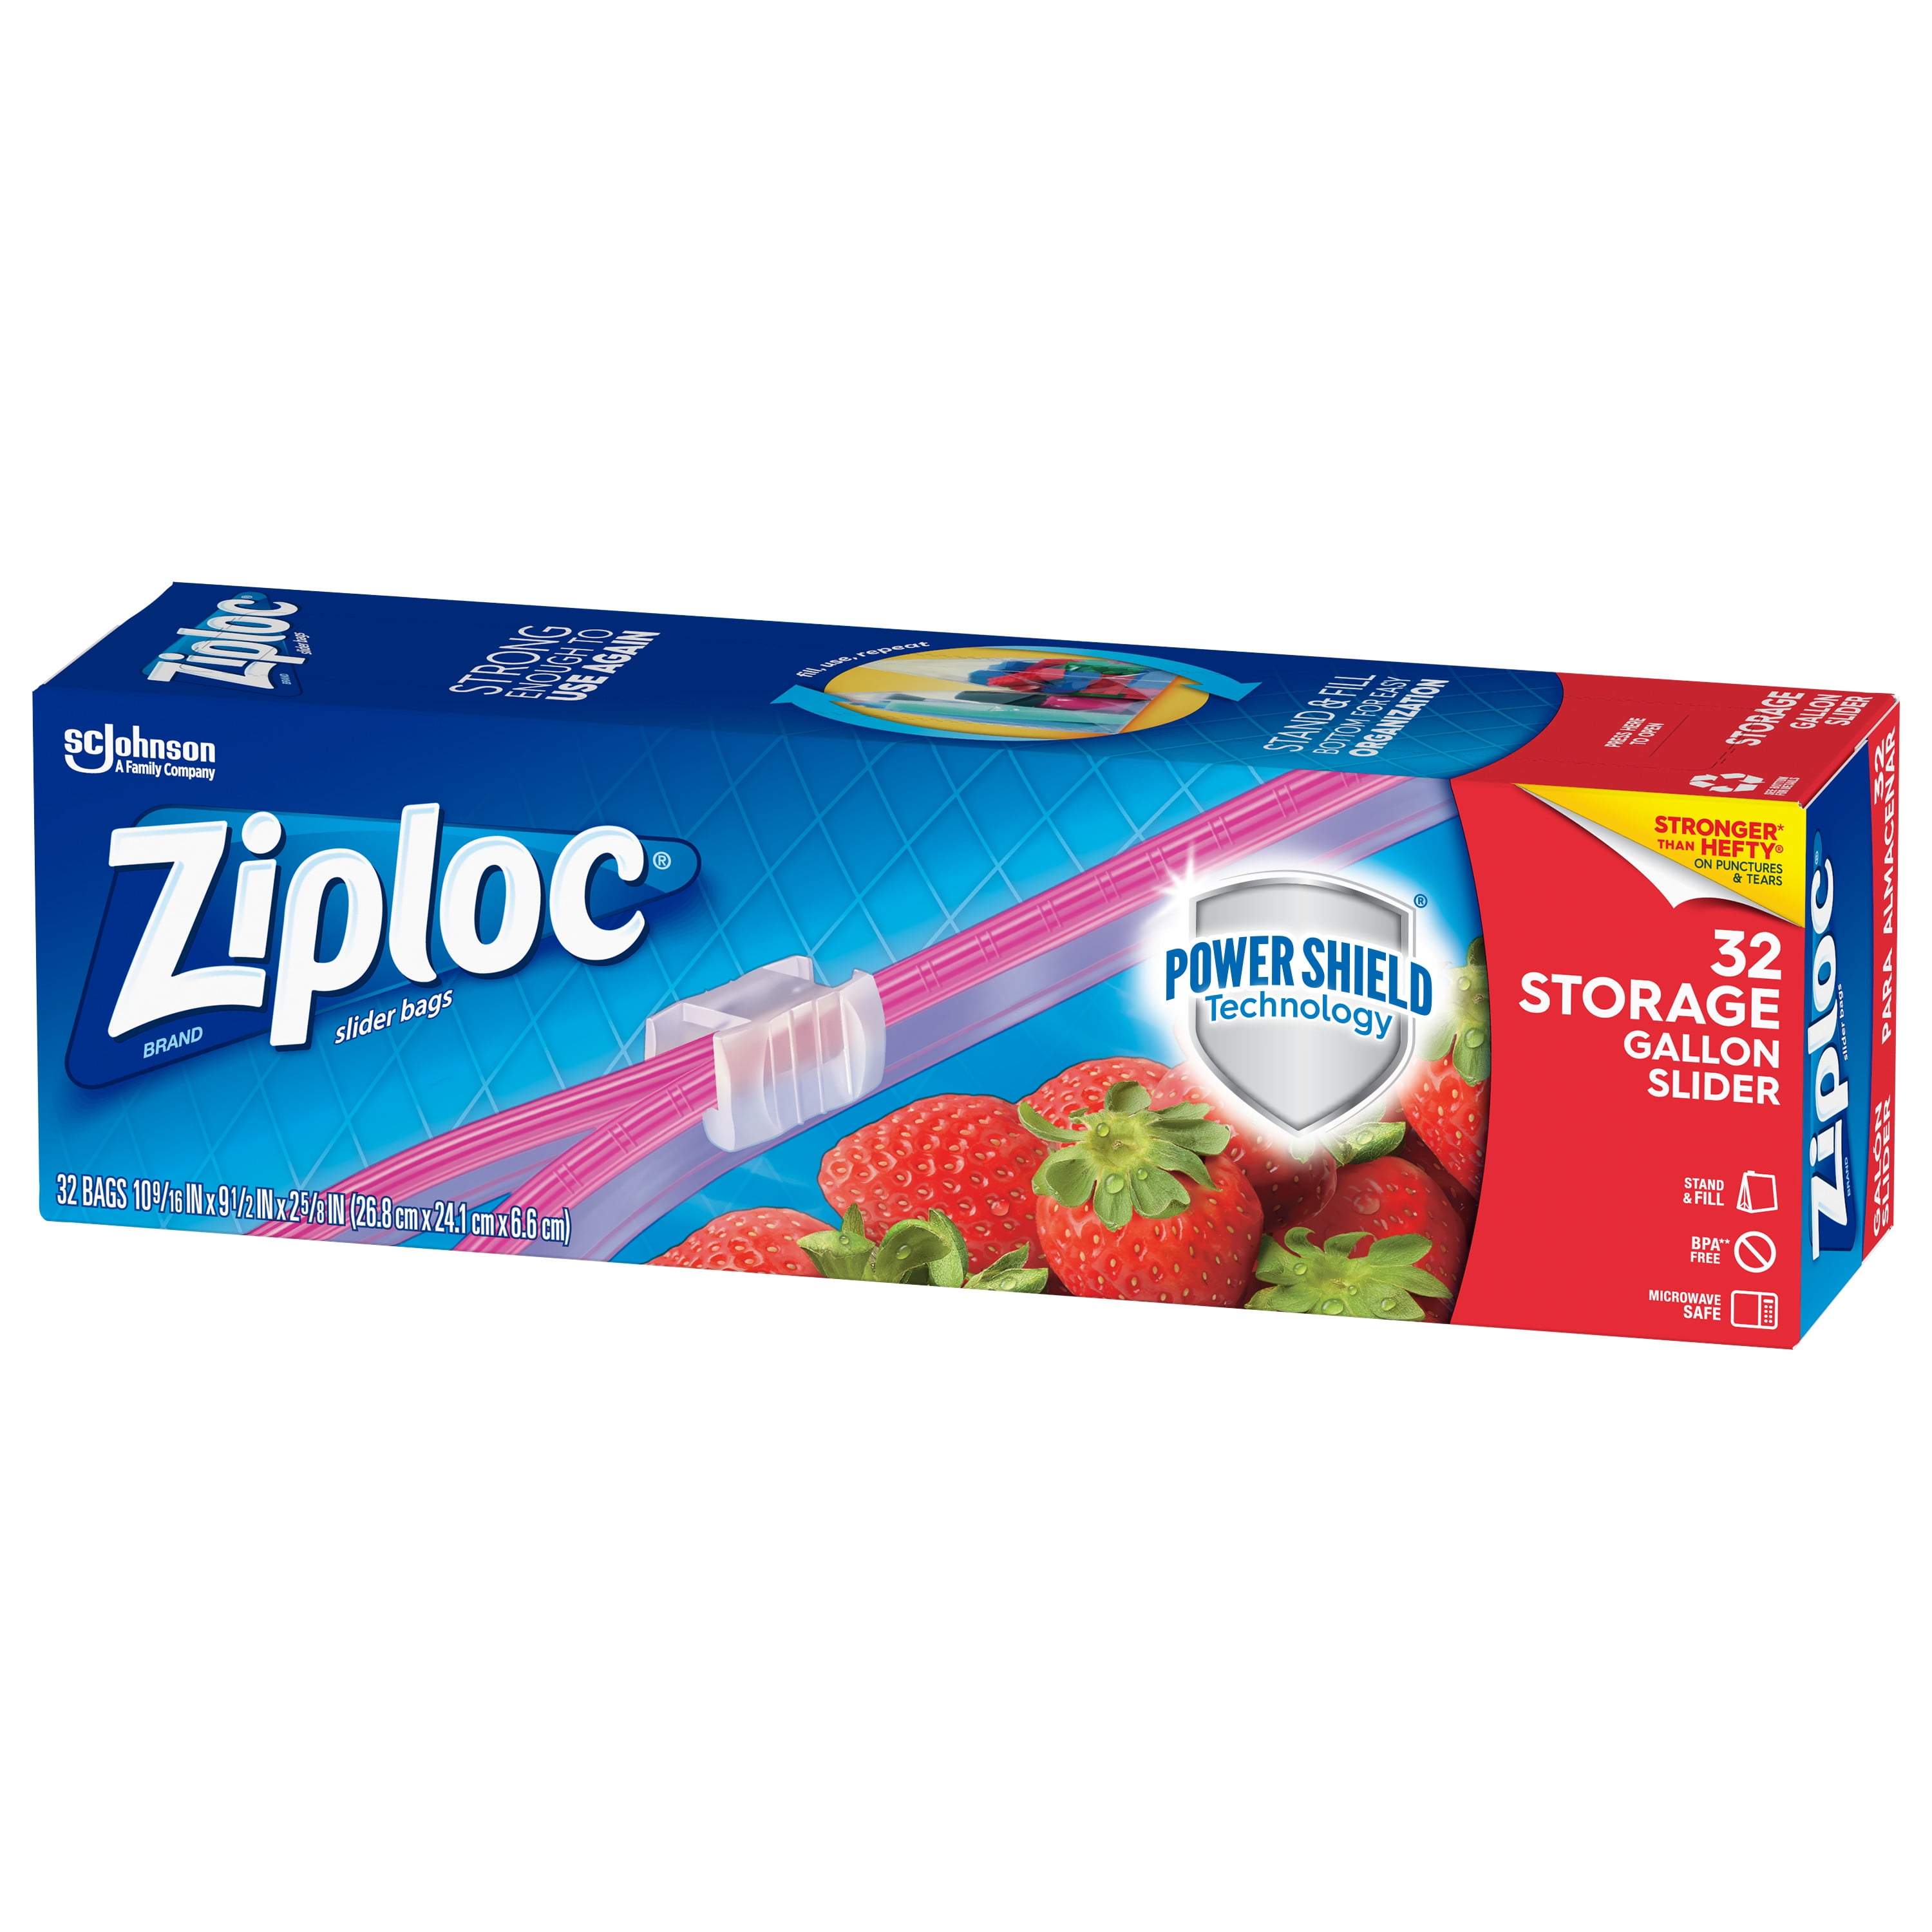 Ziploc® 2 Gallon Storage Bags (100 Case) - WebstaurantStore